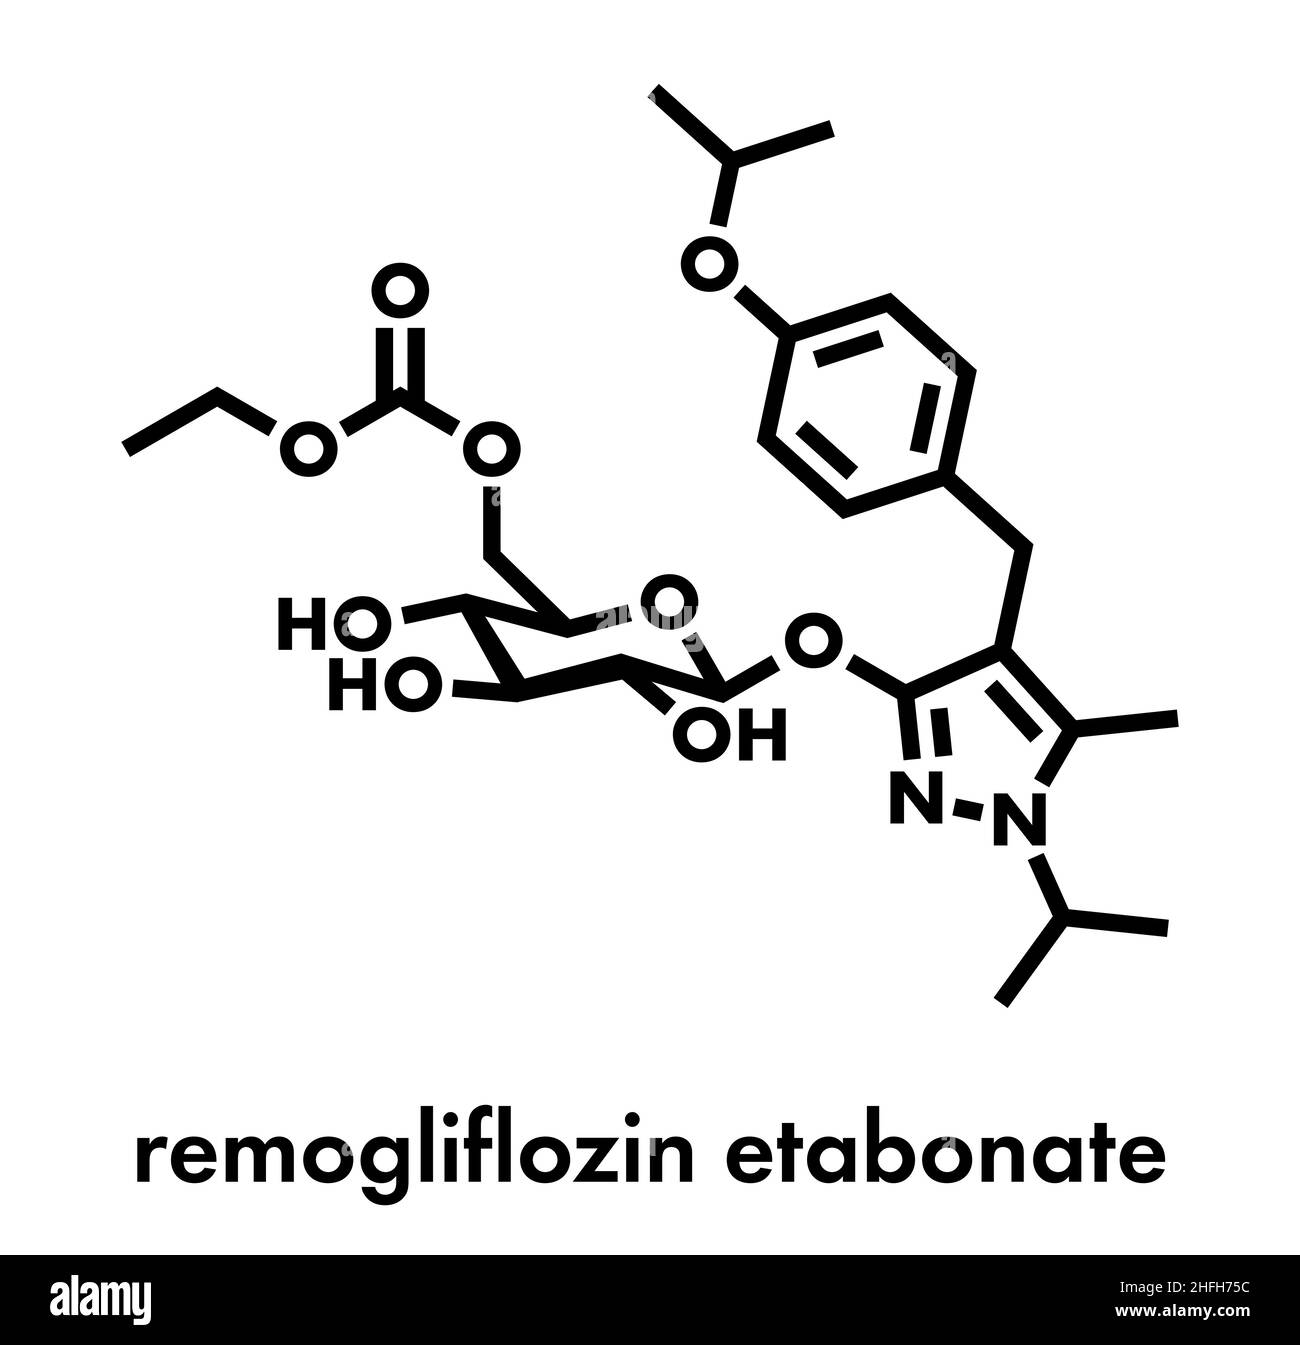 Remogliflozin etabonate drug molecule. Skeletal formula. Stock Vector